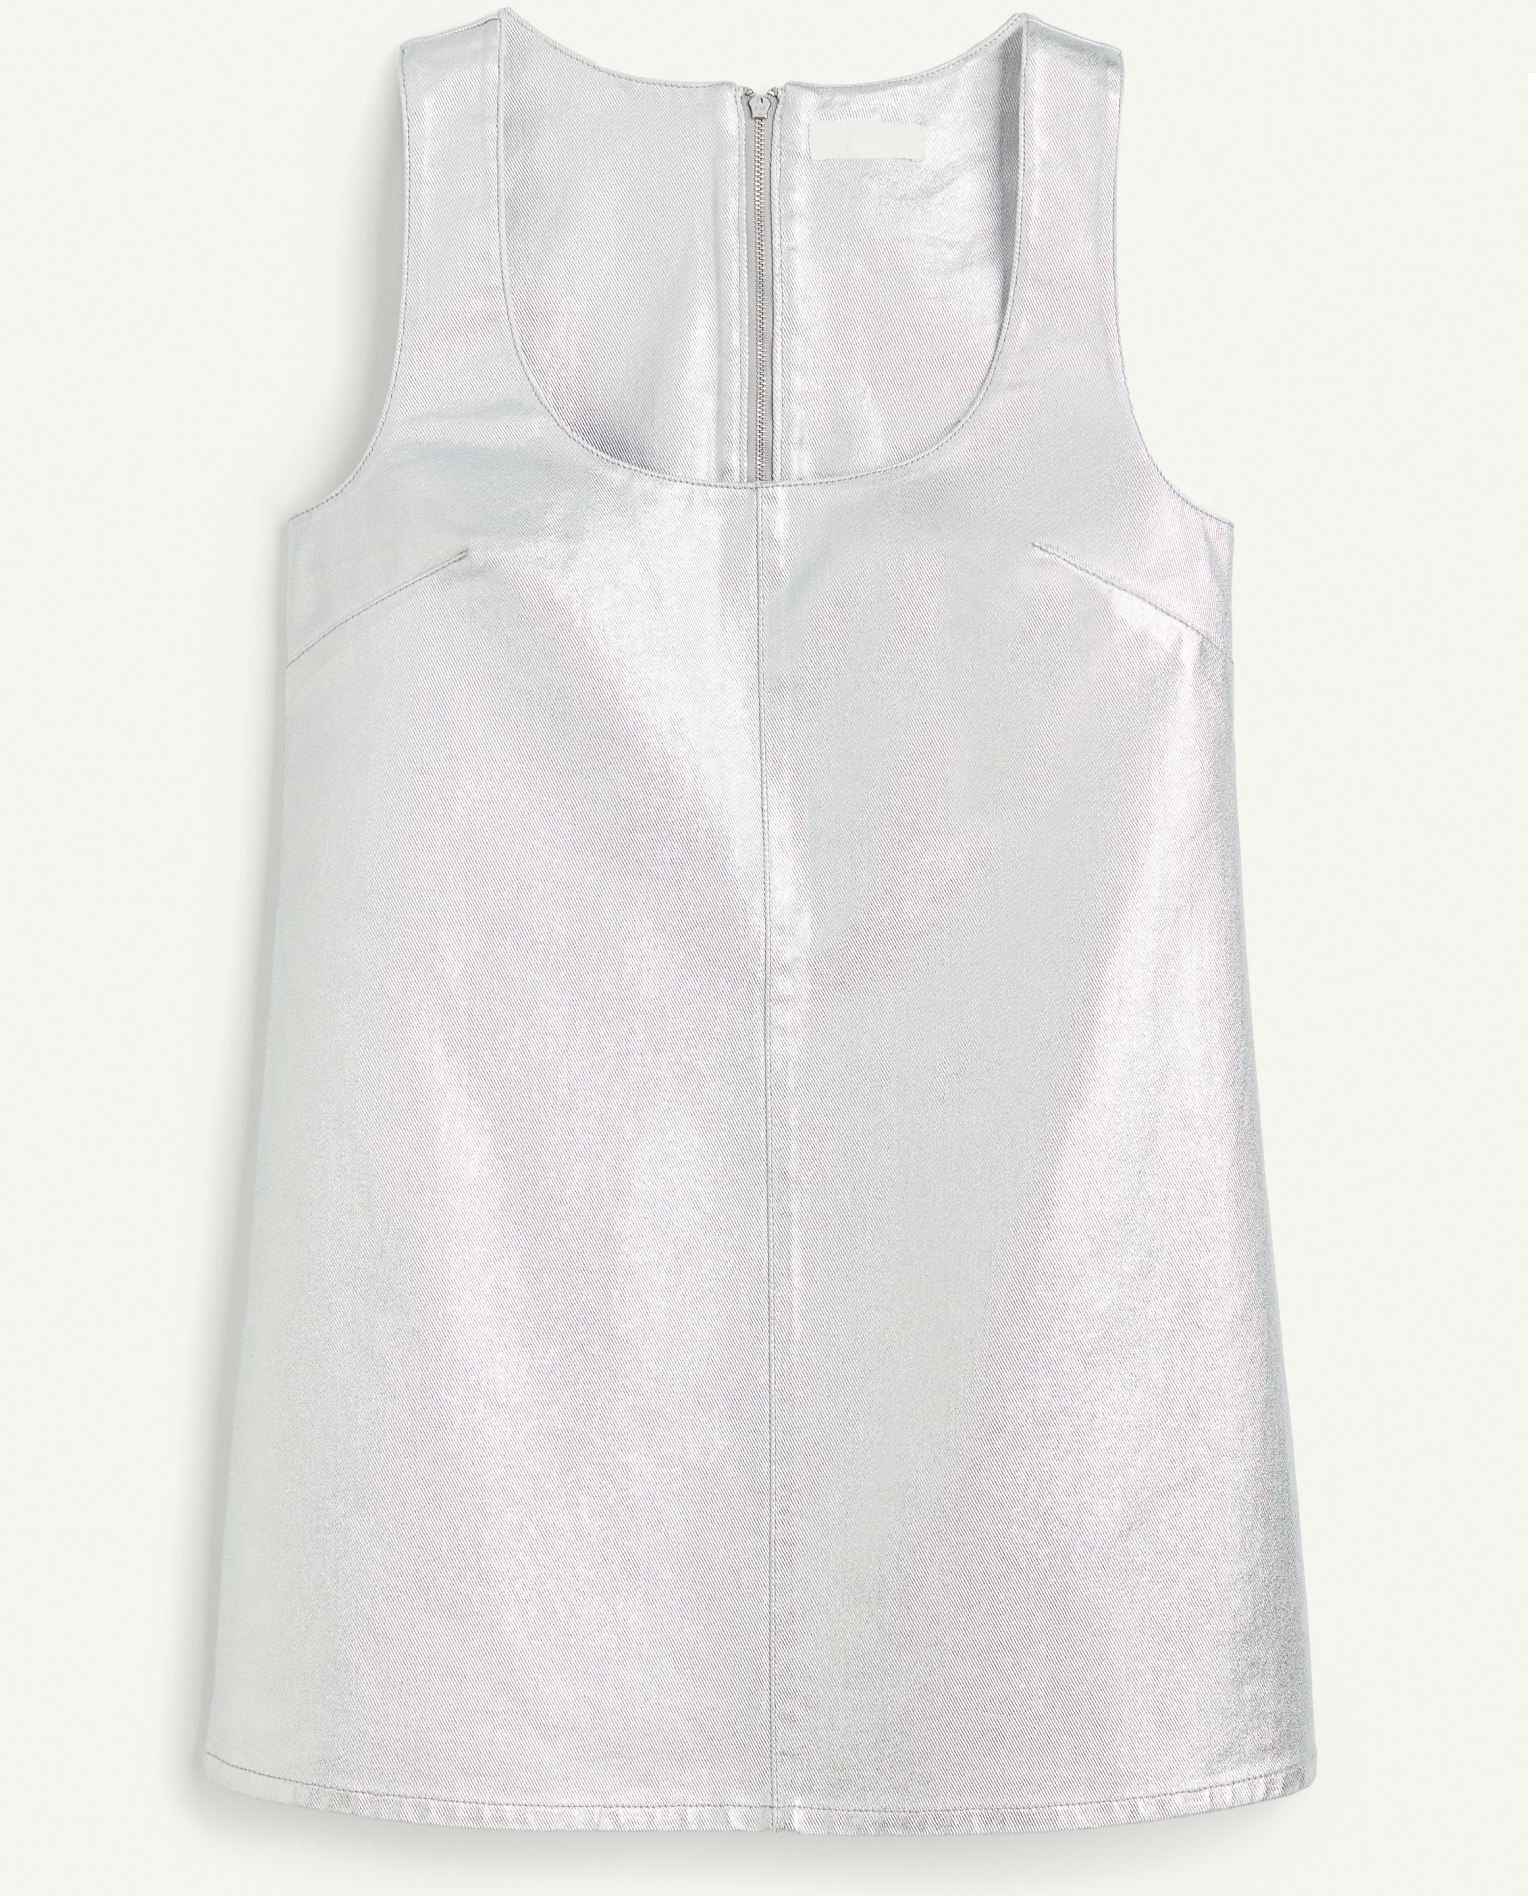 жакет без рукавов из денима xxl белый Платье мини H&M Denim With A Metallic Shine, серебристый